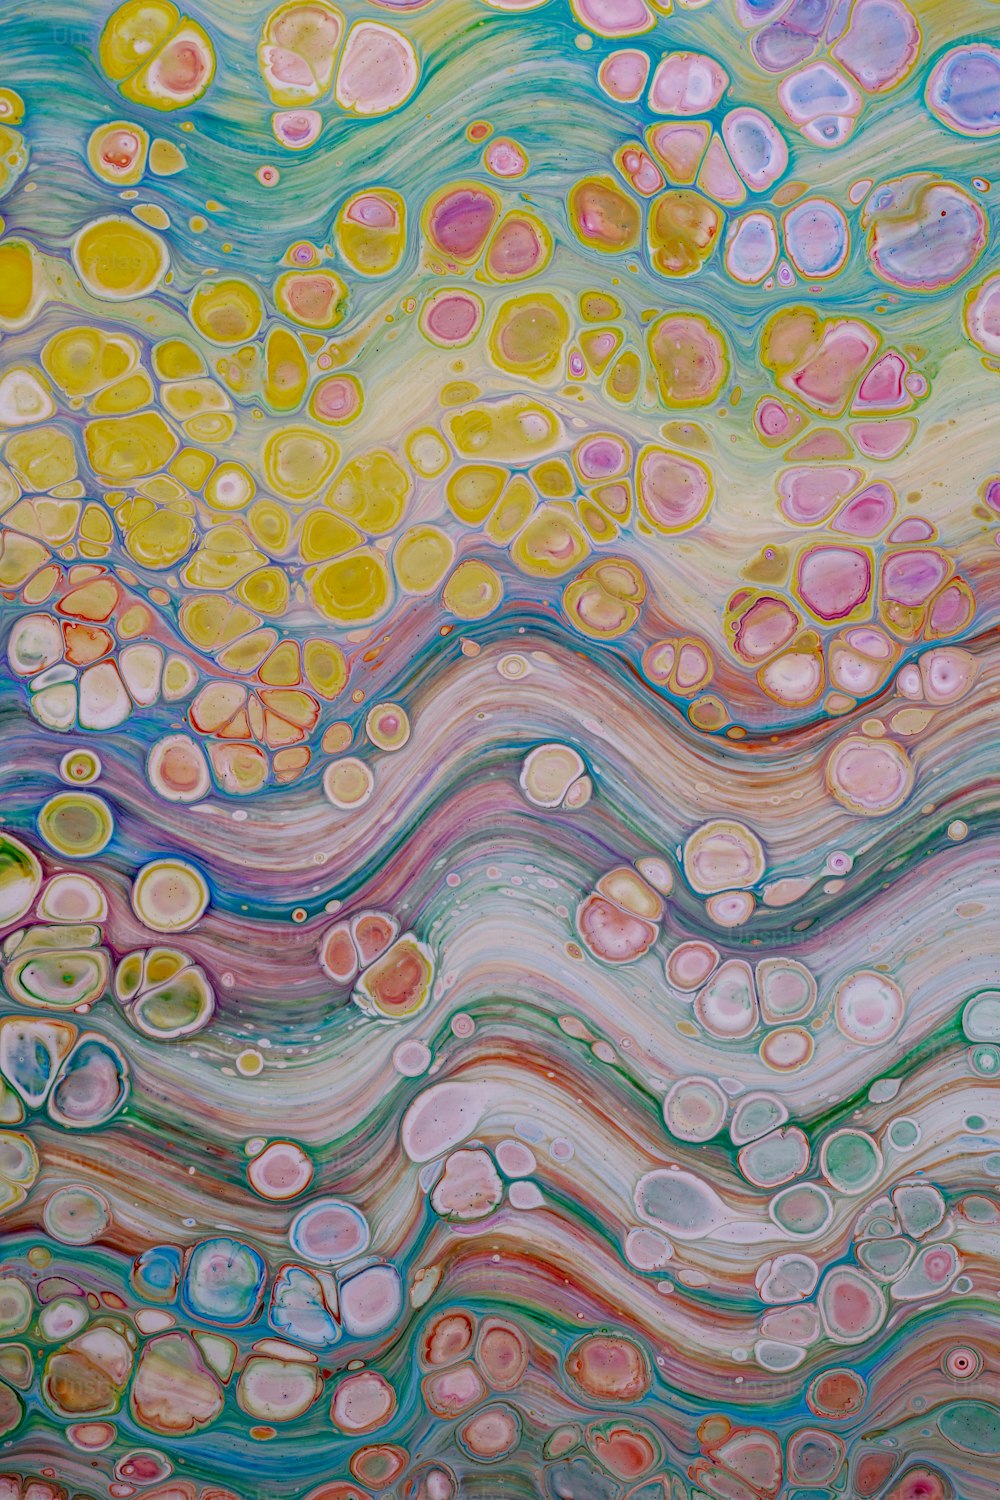 Una pintura abstracta con muchos colores diferentes